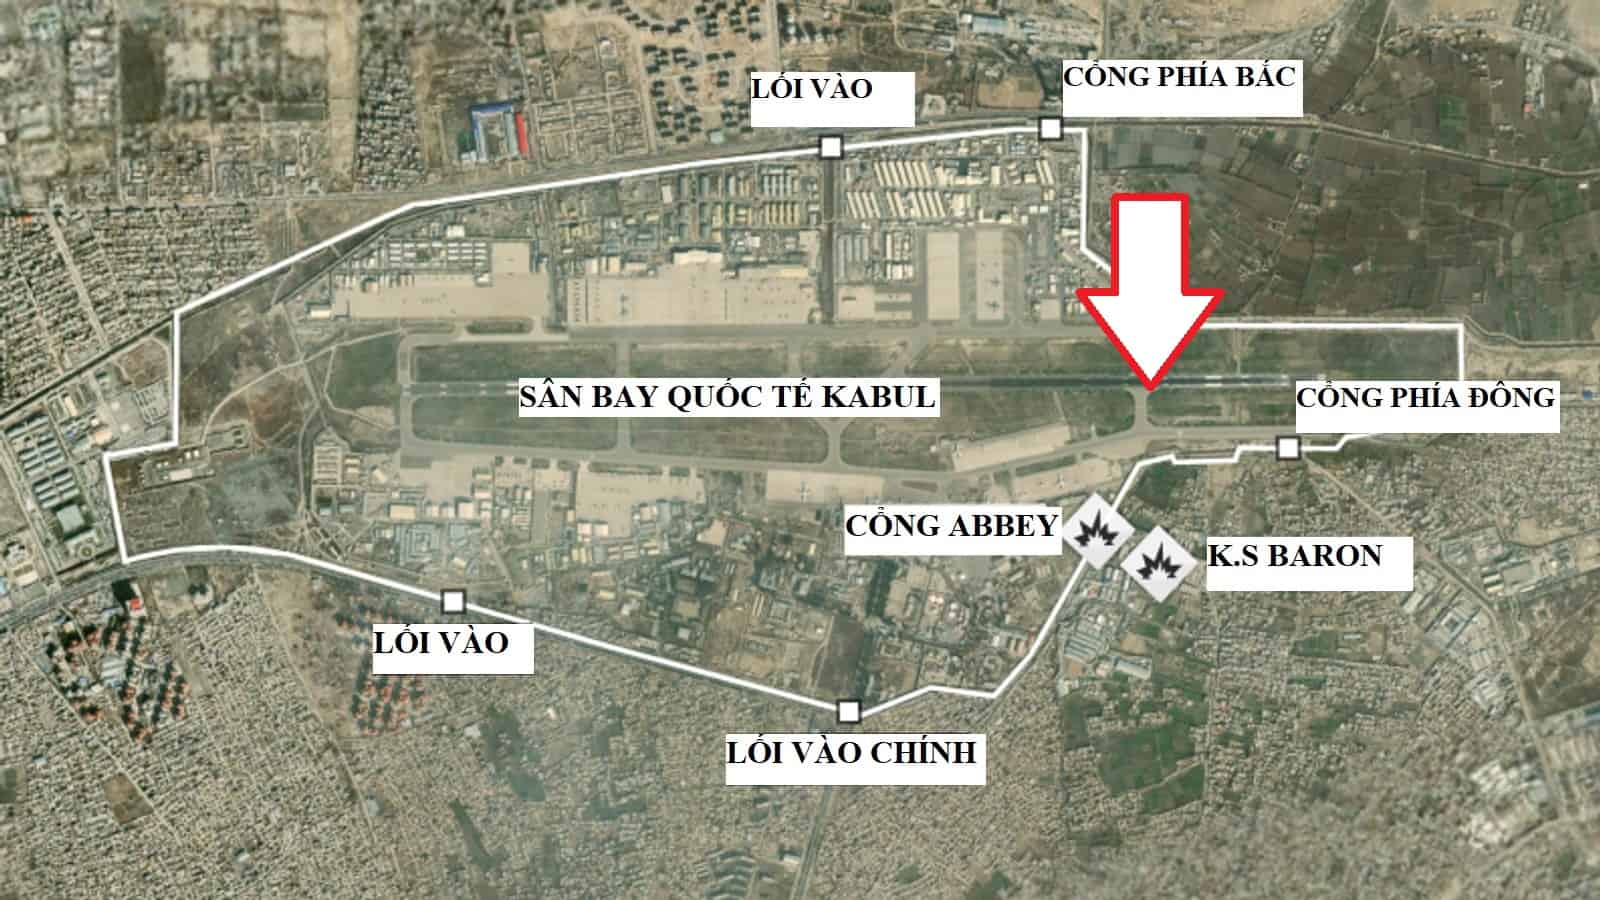 Các vụ đánh bom liều chết xảy ra ở bên ngoài cổng Abbey của sân bay quốc tế Kabul và khách sạn Baron gần đó (hướng mũi tên đỏ). Ảnh: Sky News (đã Việt hóa)